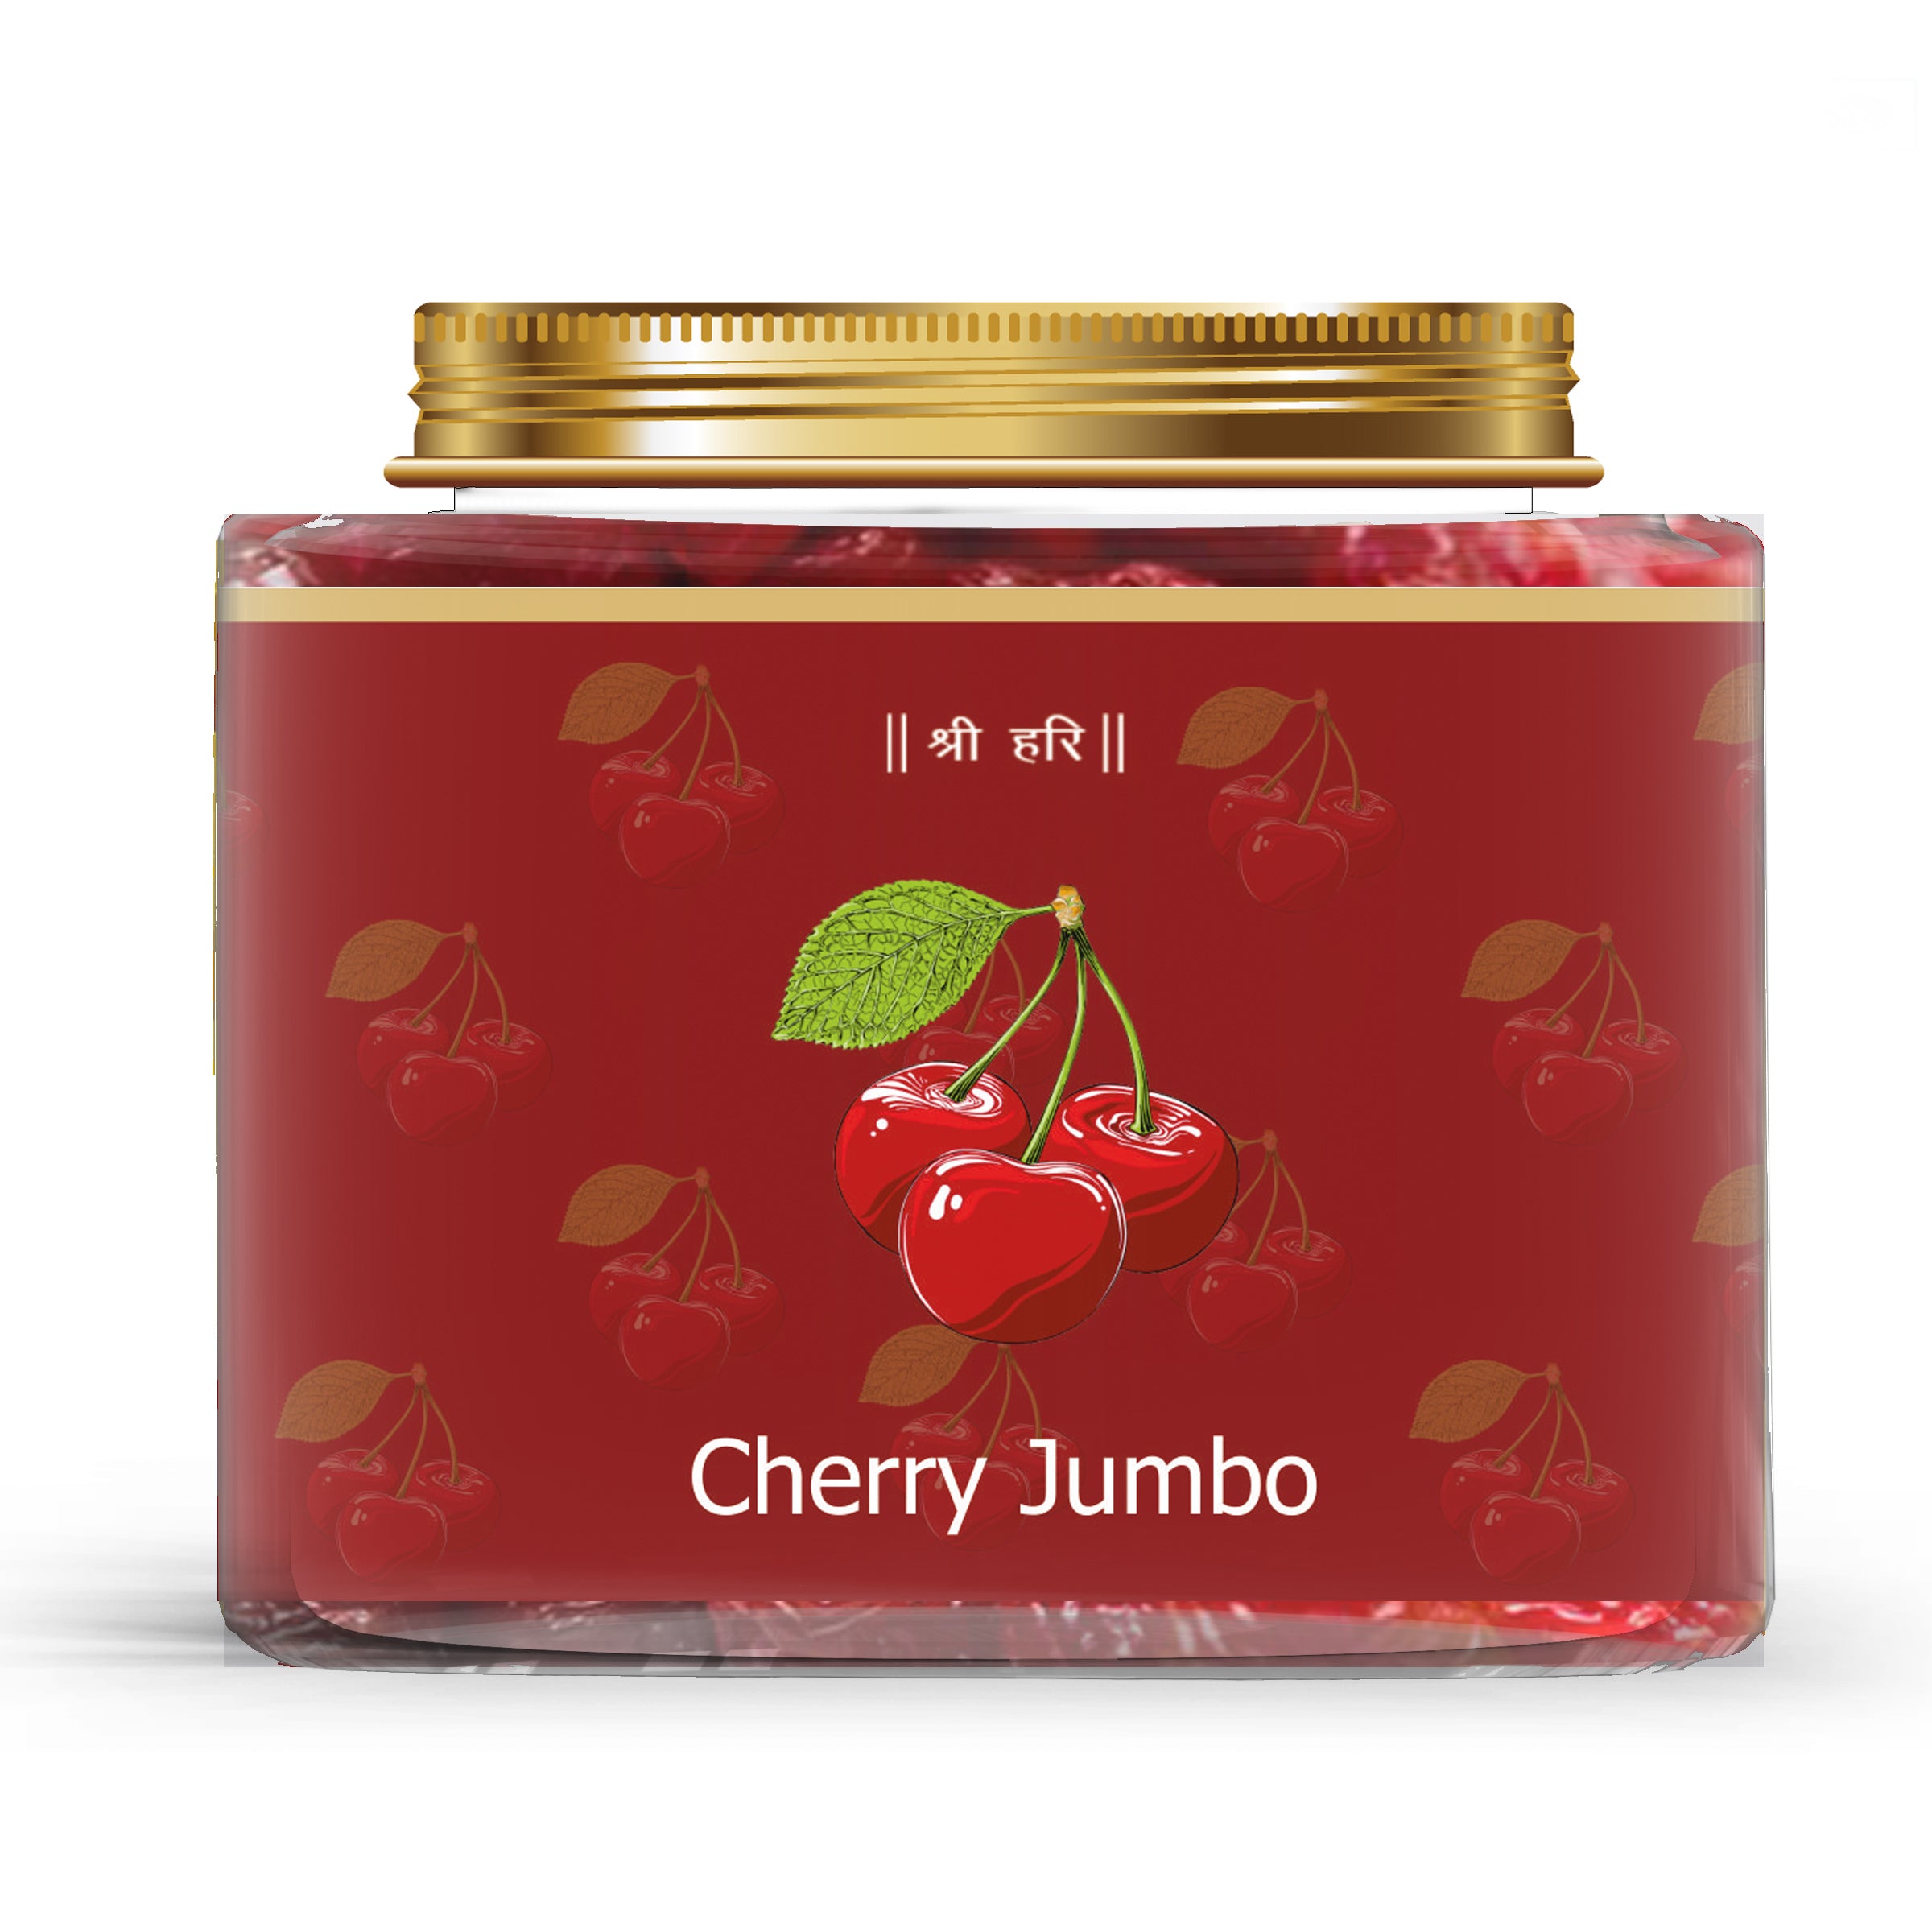 Dried Cherry Jumbo Premium Quality 250gm